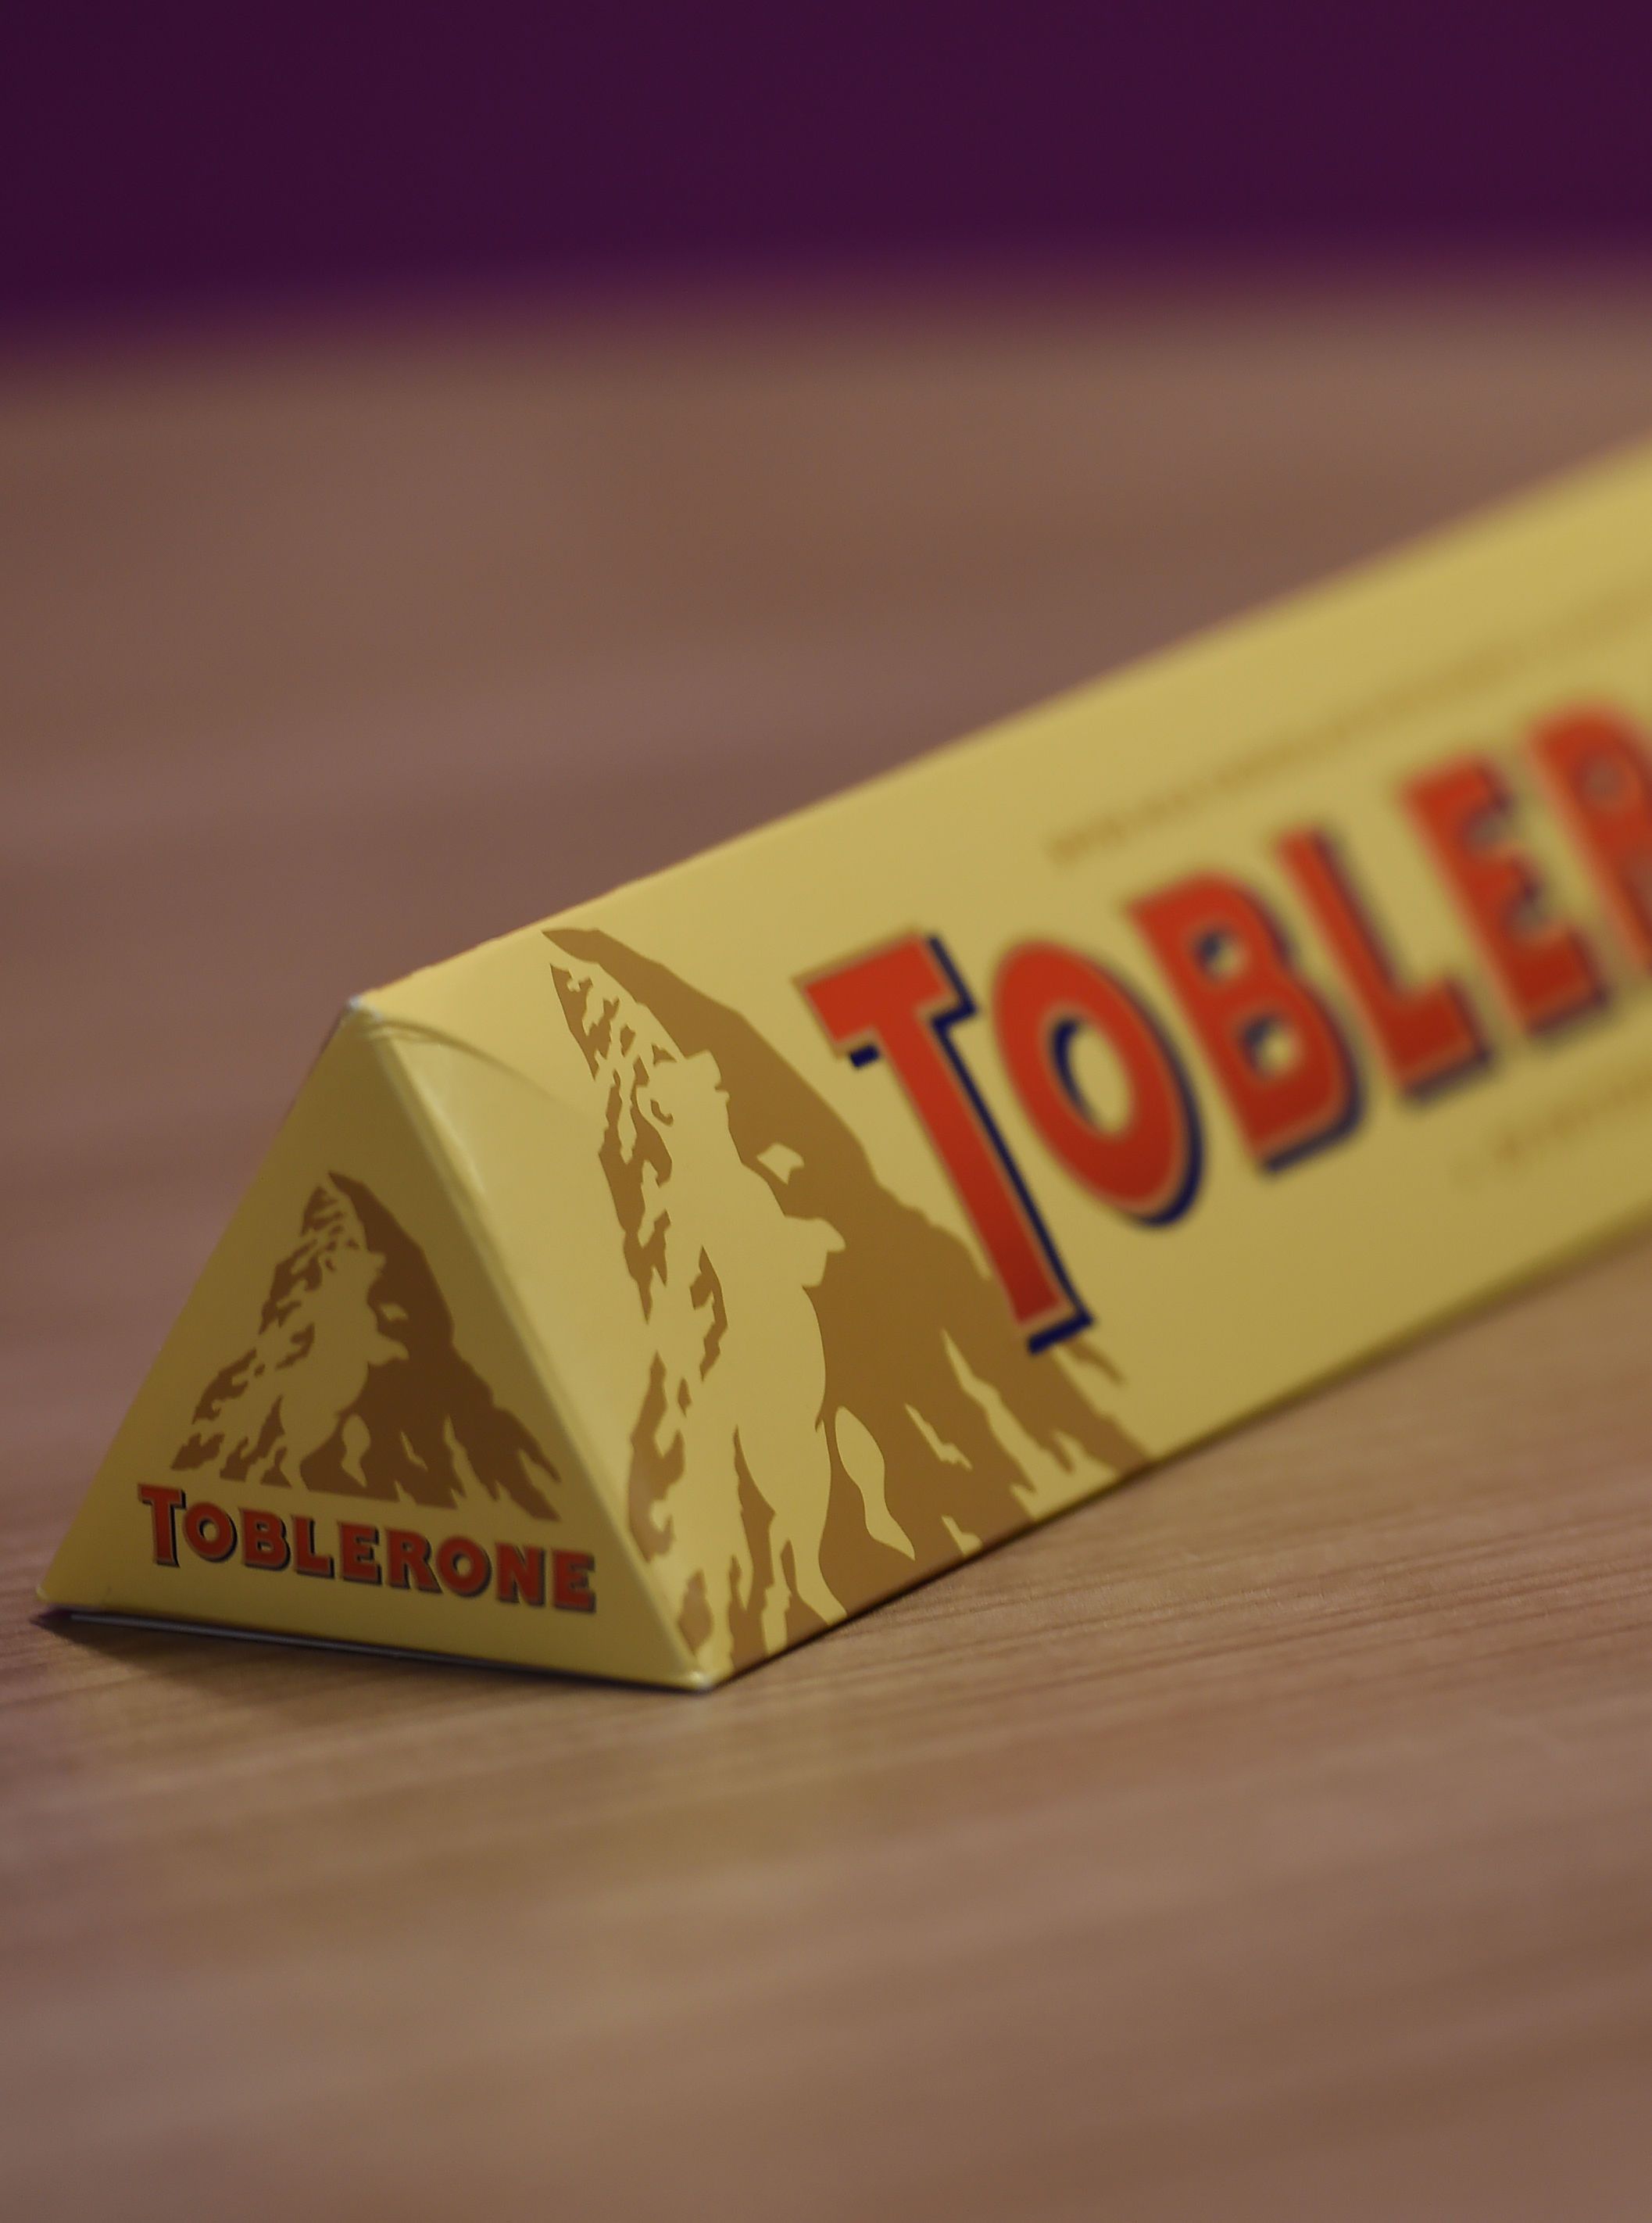 Plus assez suisse, Toblerone doit changer son logo